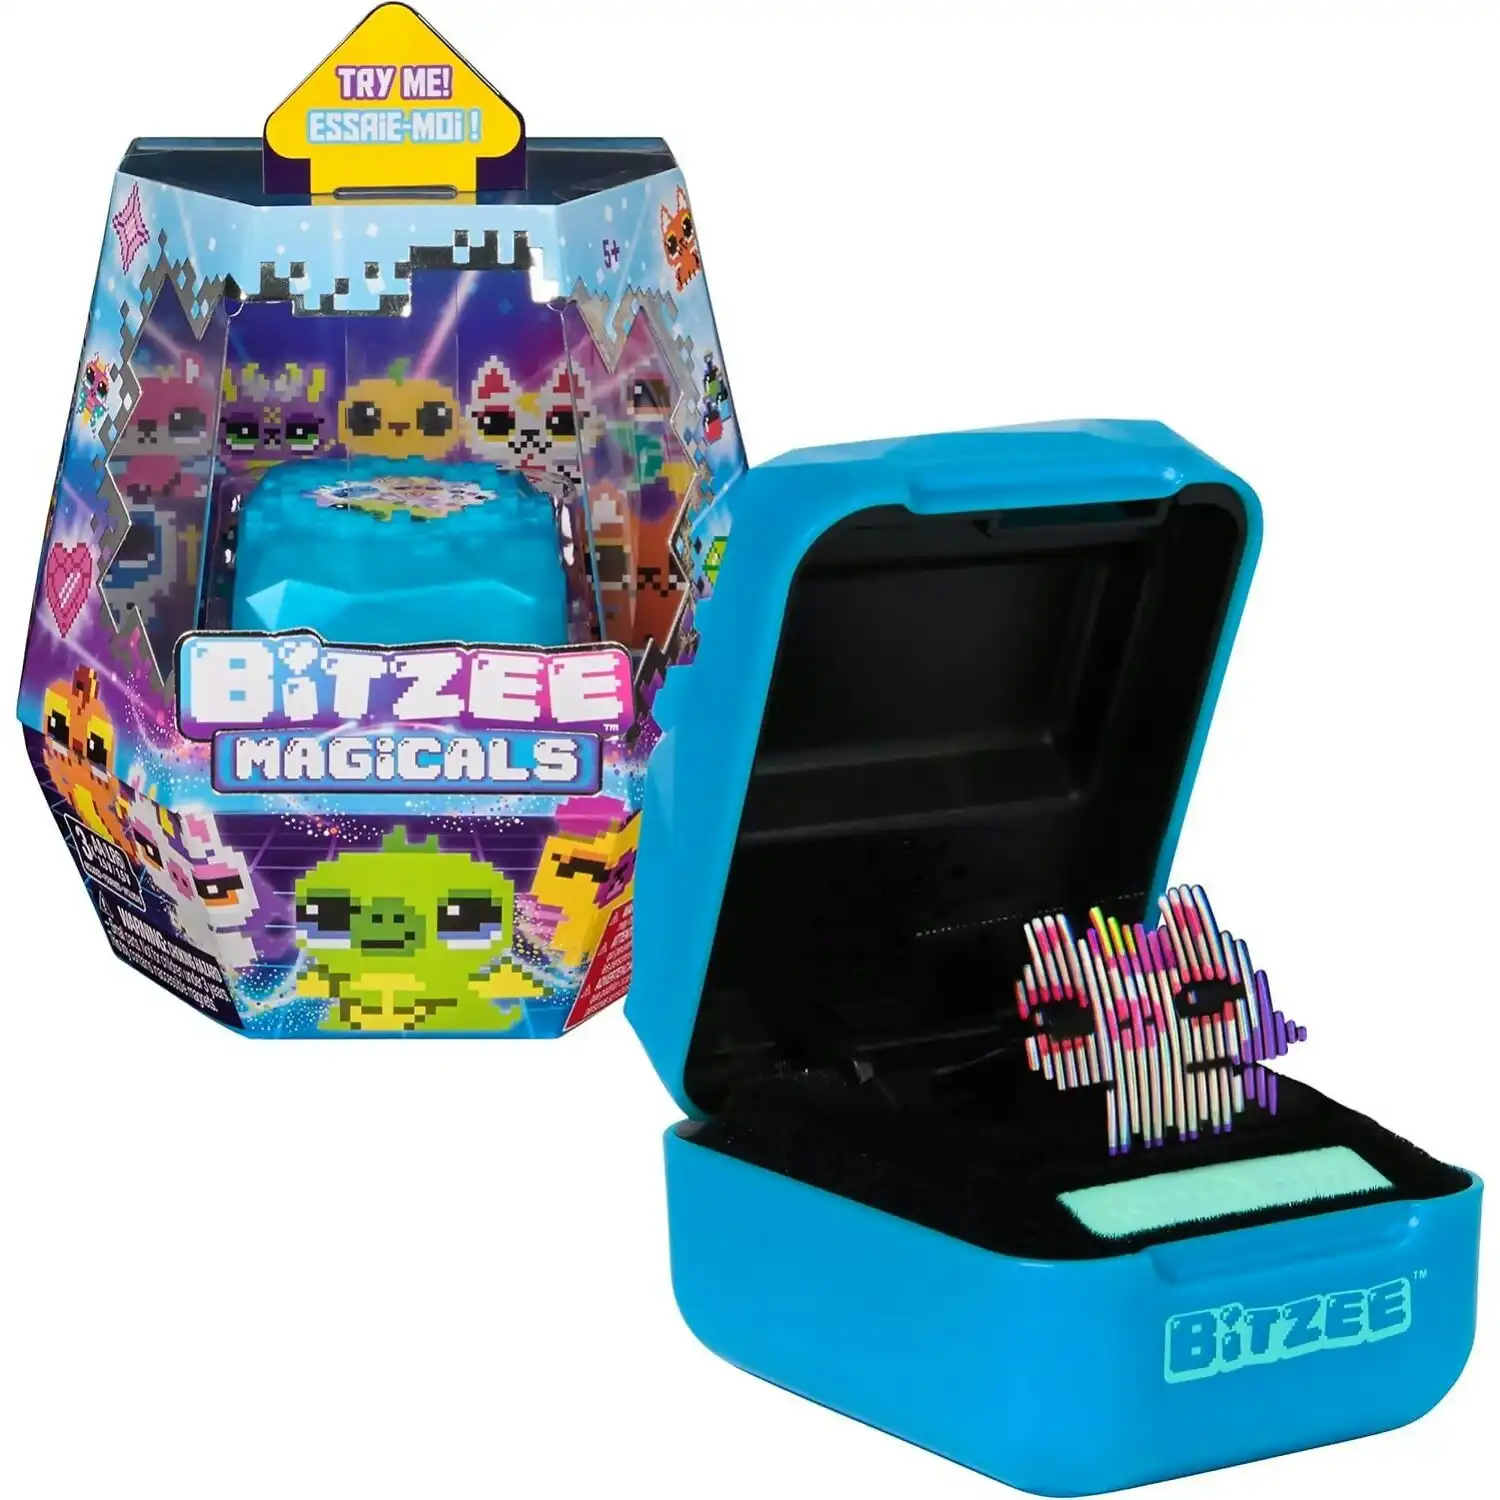 Bitzee - Magicals Interactive Digital Pet